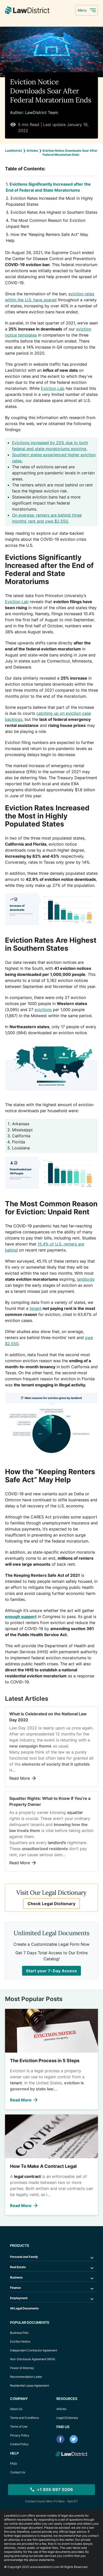 Eviction Notice Downloads Soar After Federal Moratorium Ends